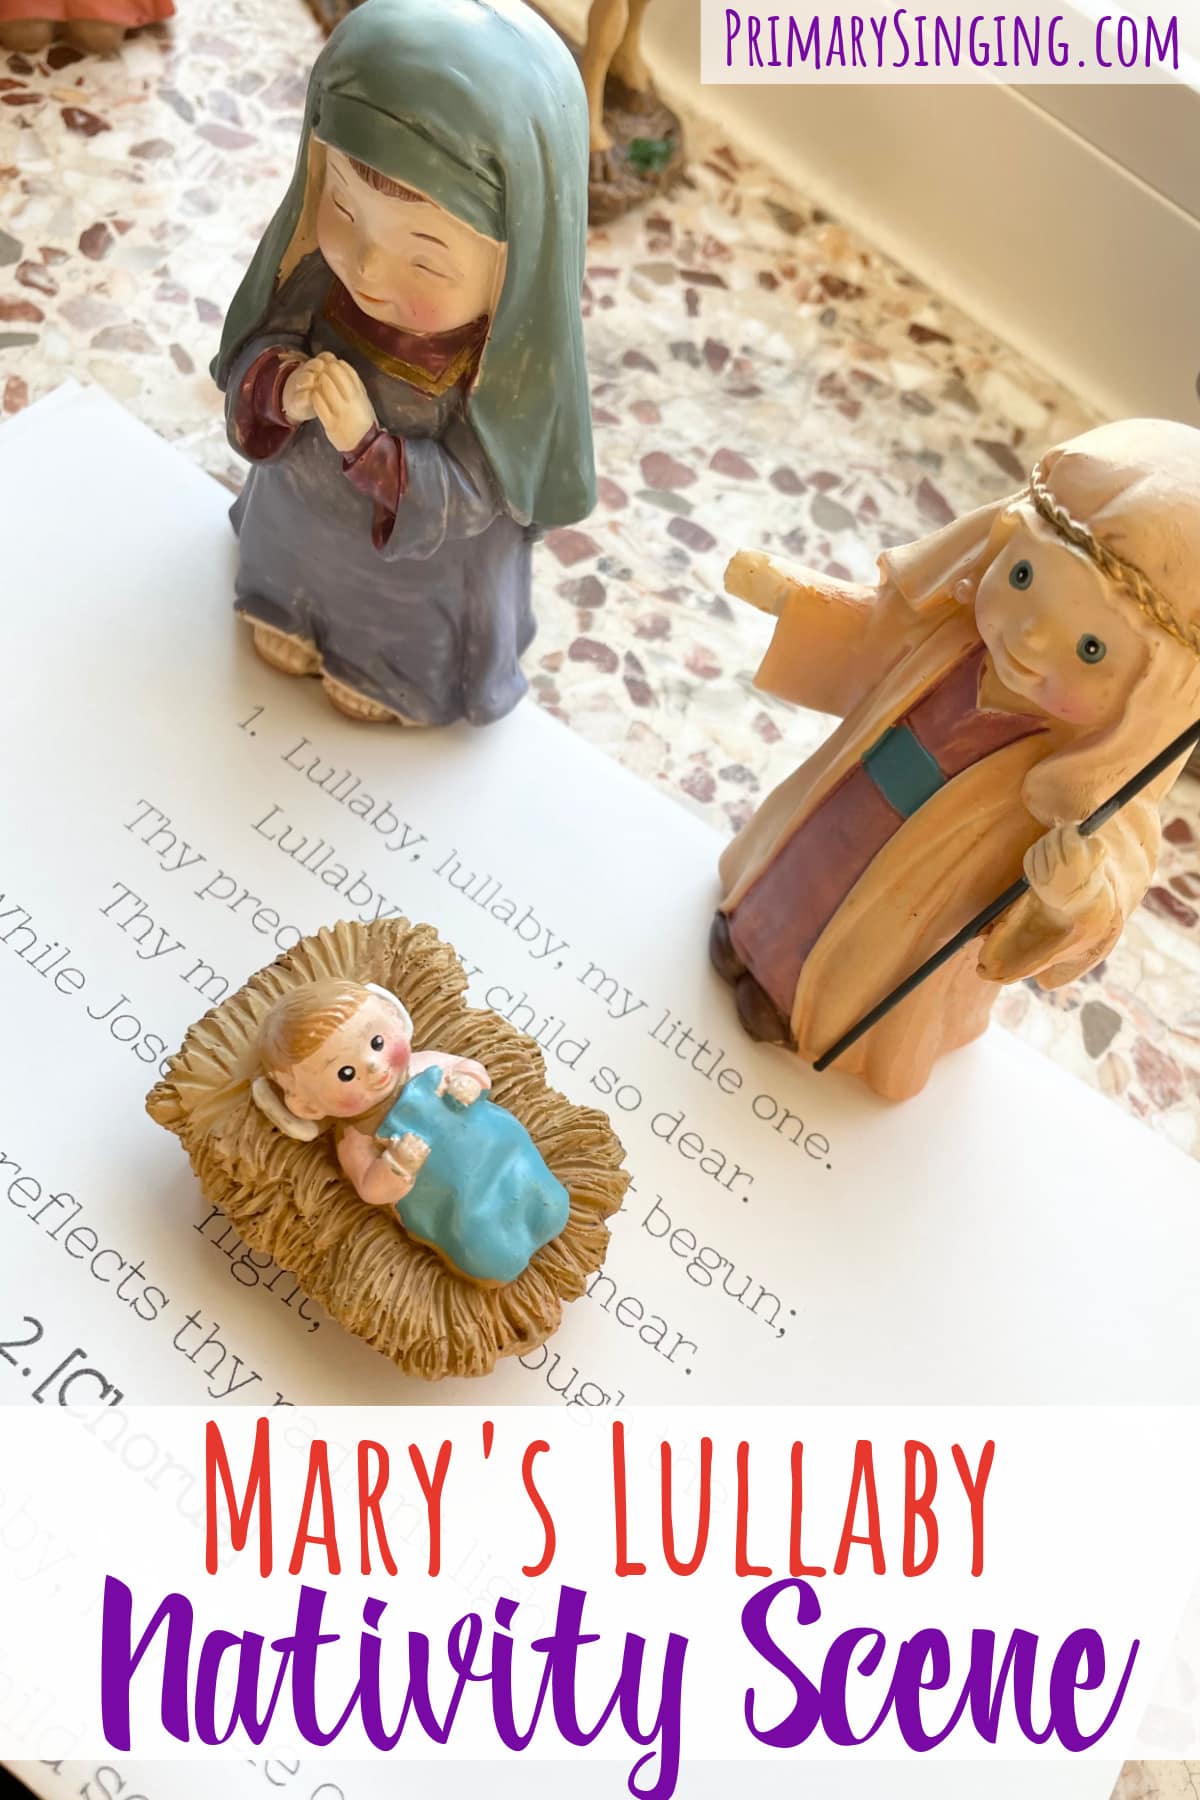 Mary's Lullaby Nativity Scene Activity Easy ideas for Music Leaders Marys Lullaby Nativity Scene